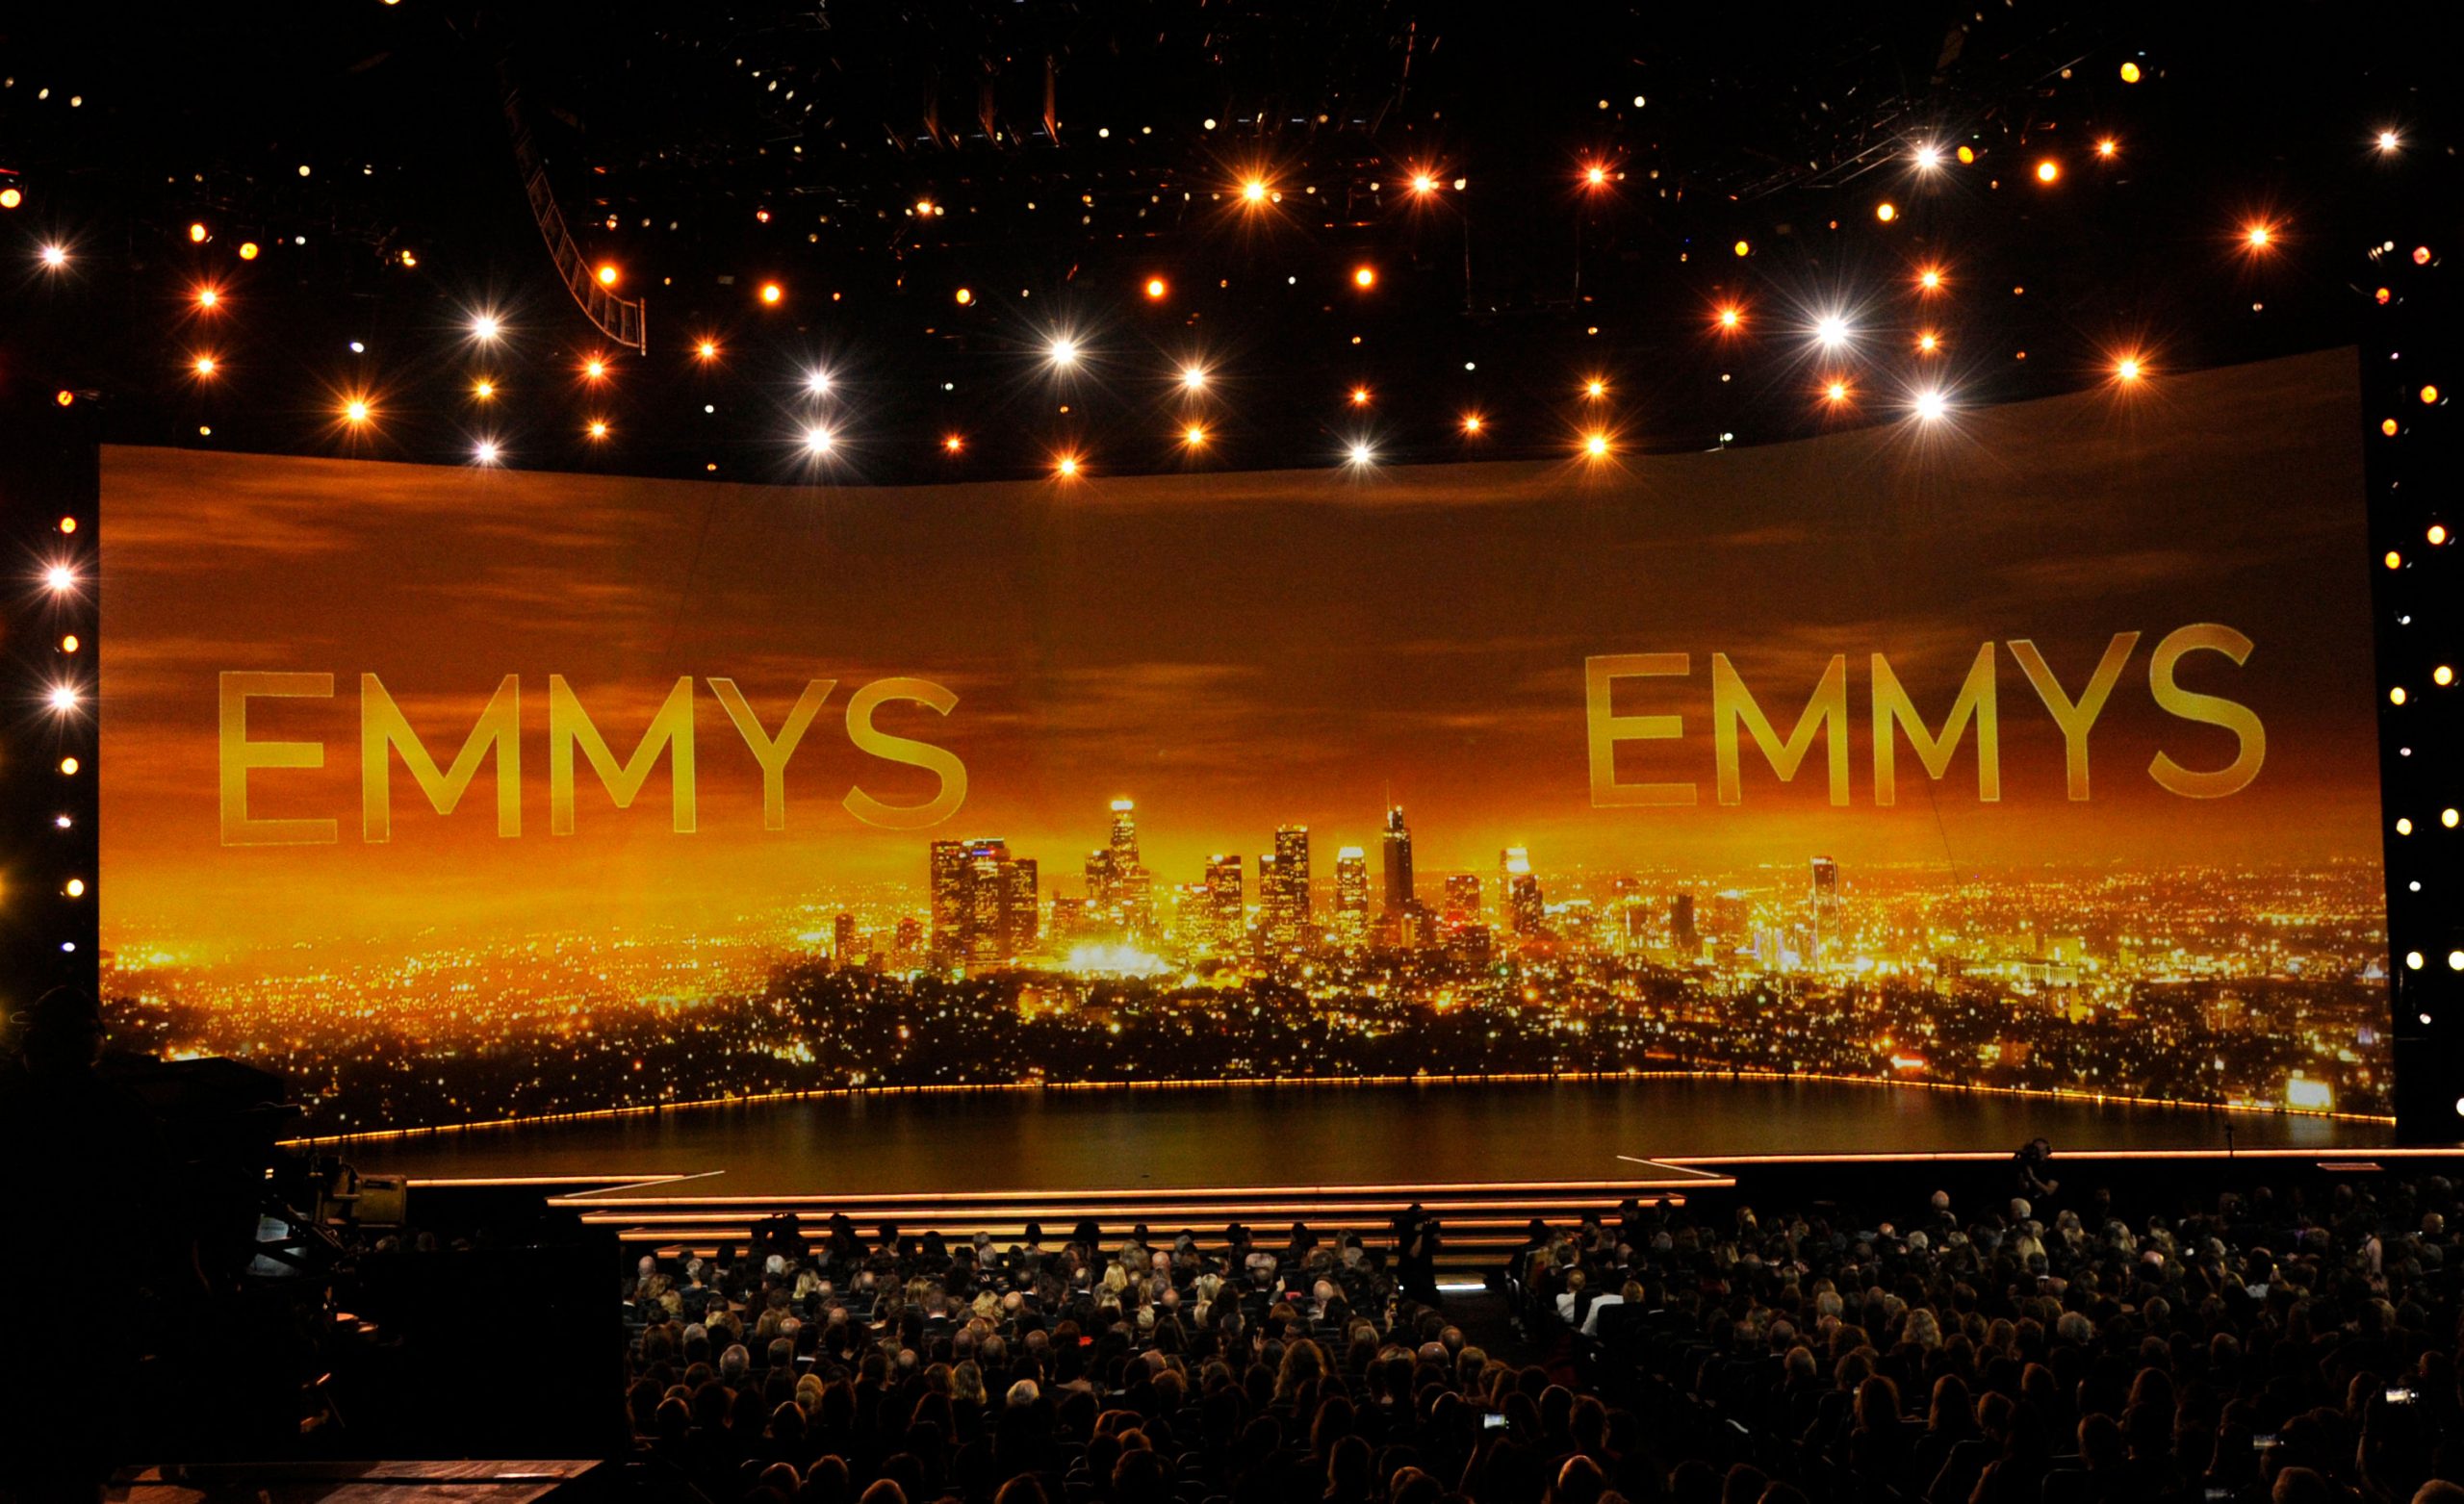 Emmys Awards 2022 live stream: 74वें एमी अवॉर्ड को भारत में कब-कहां देखें